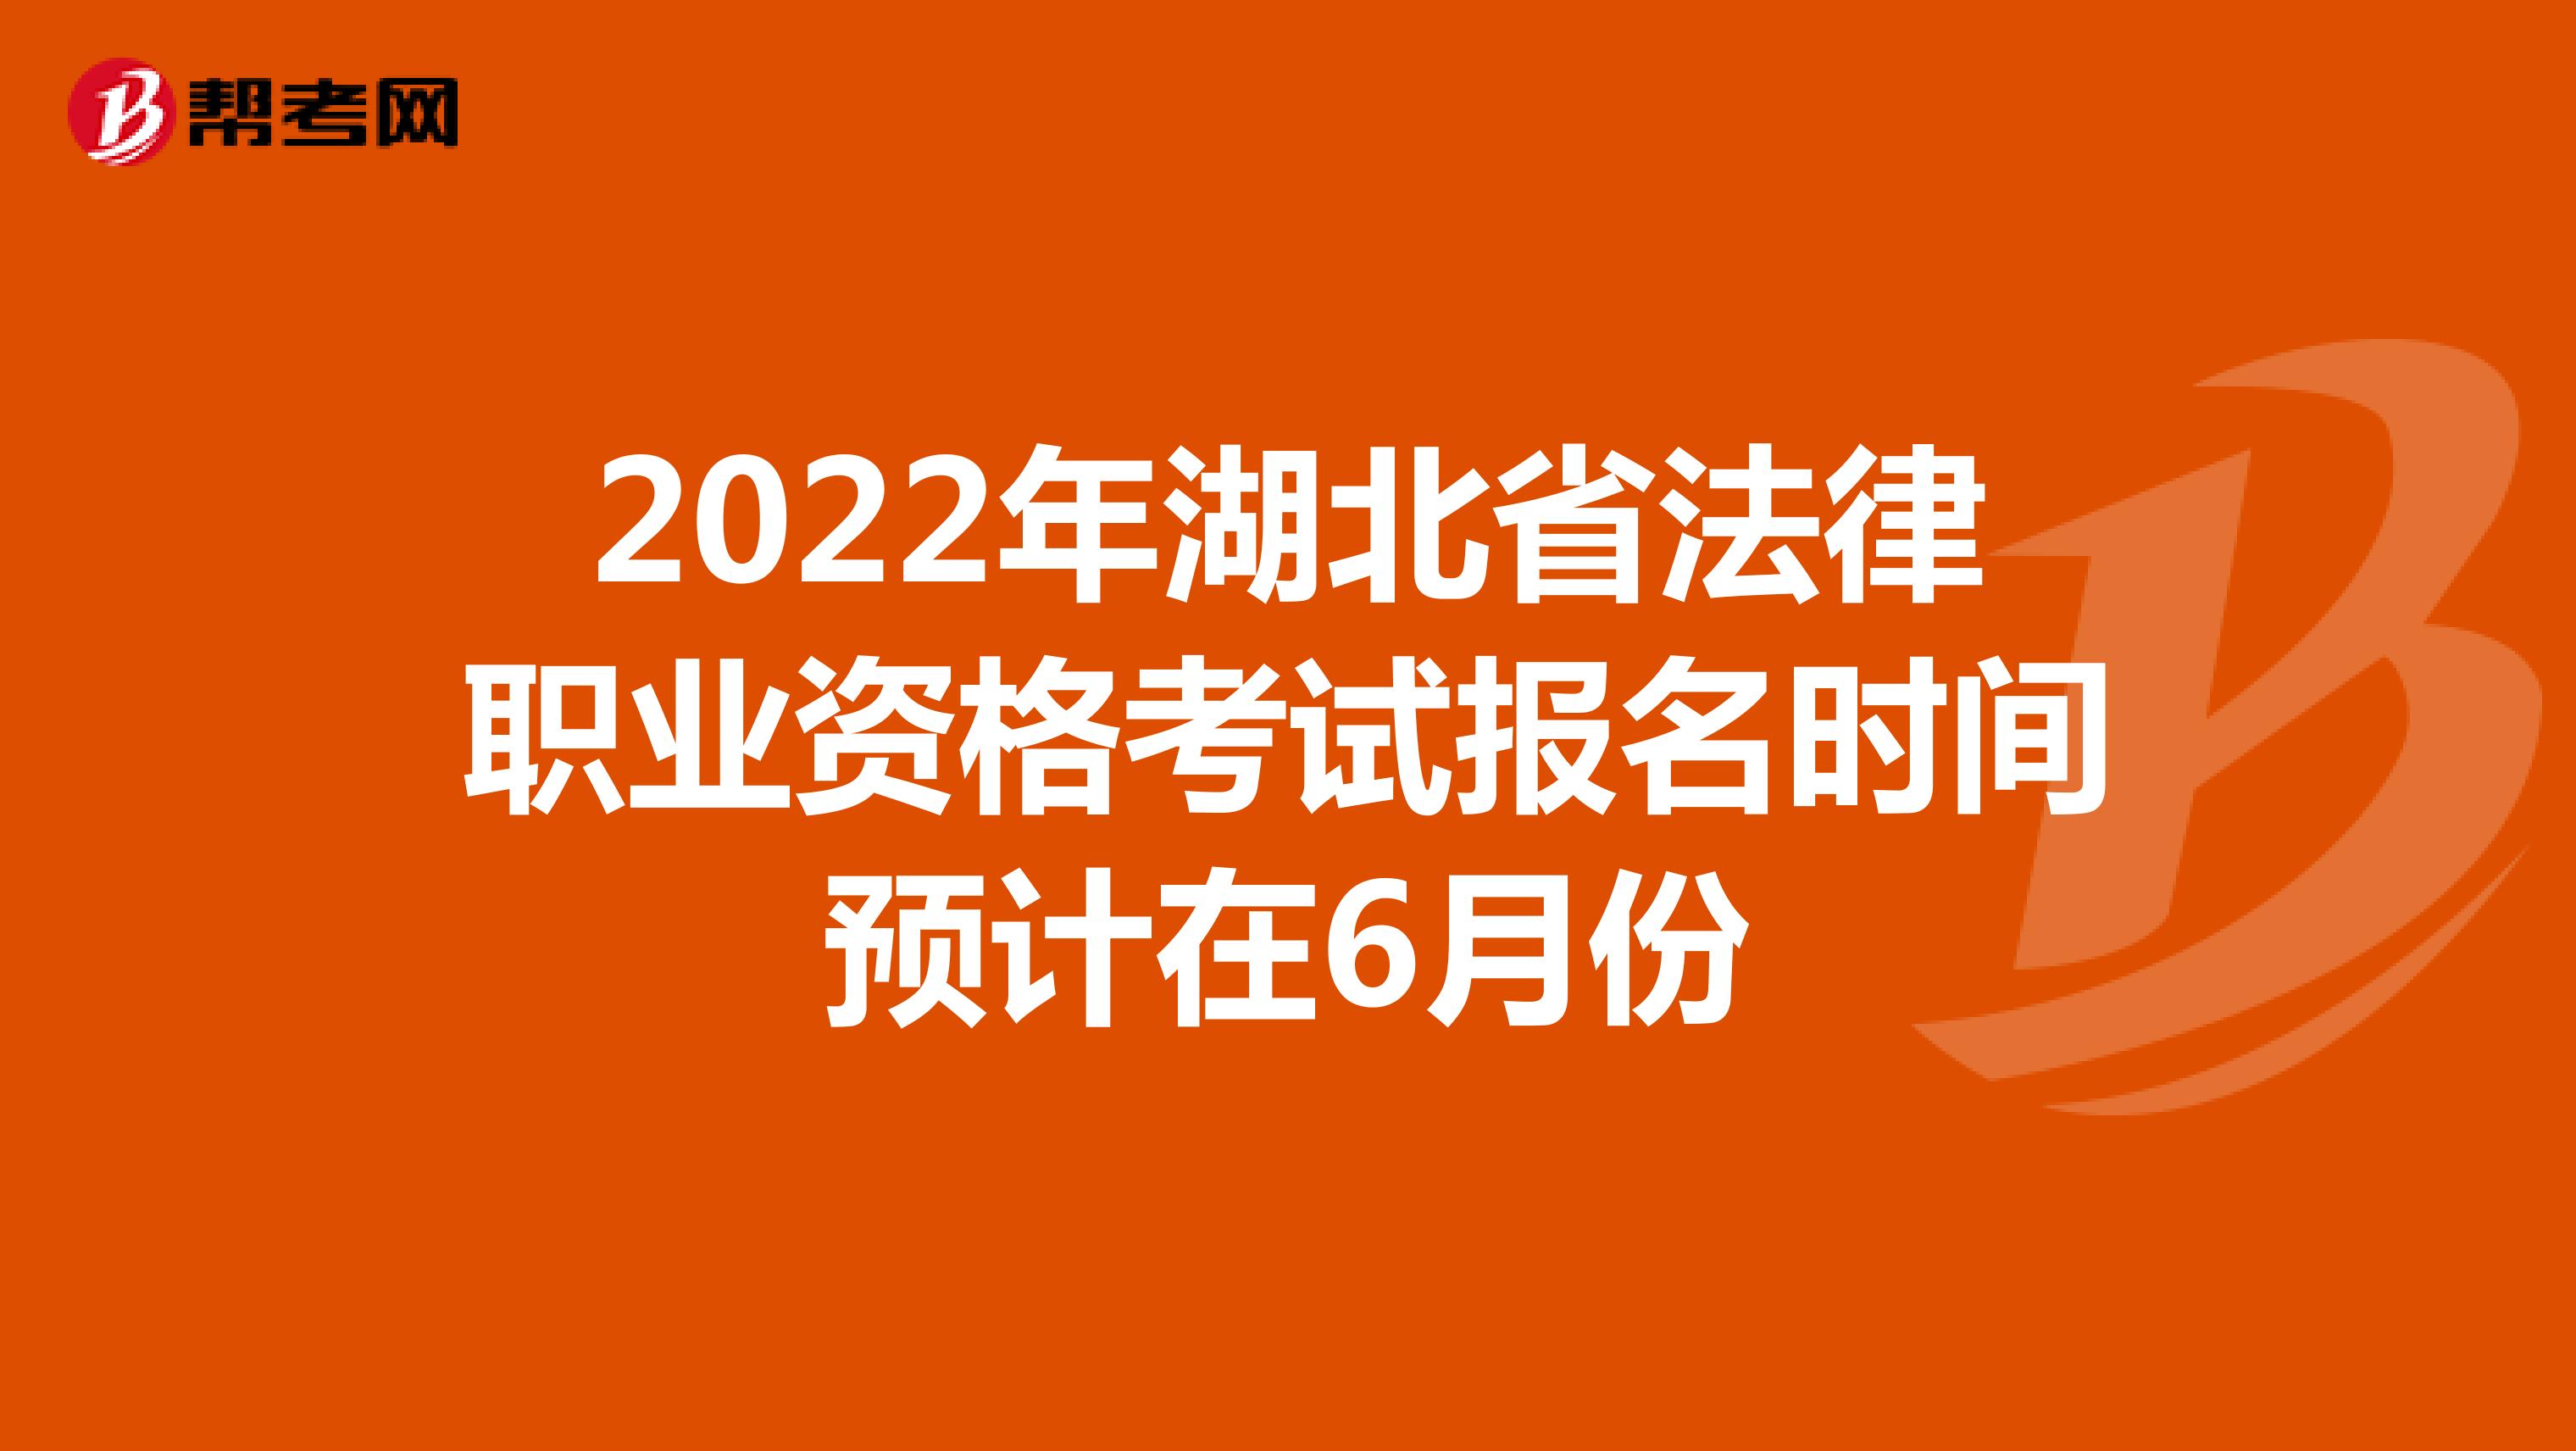 2022年湖北省法律职业资格考试报名时间预计在6月份